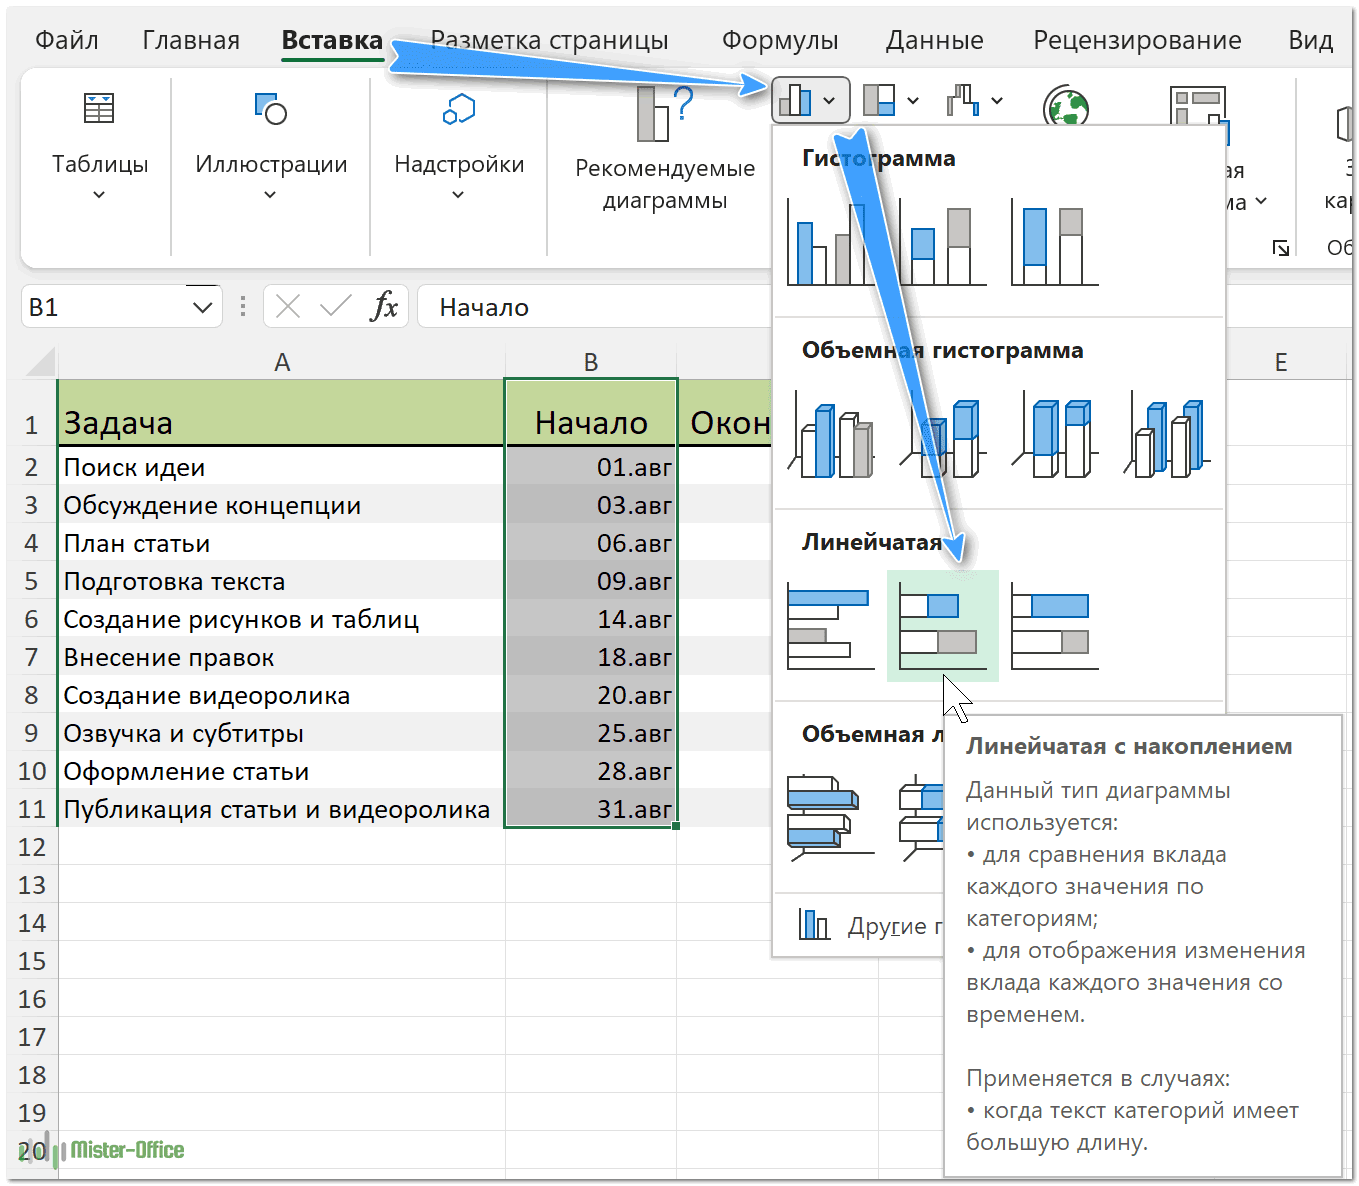 Создаем стандартную линейчатую диаграмму Excel на основе даты начала